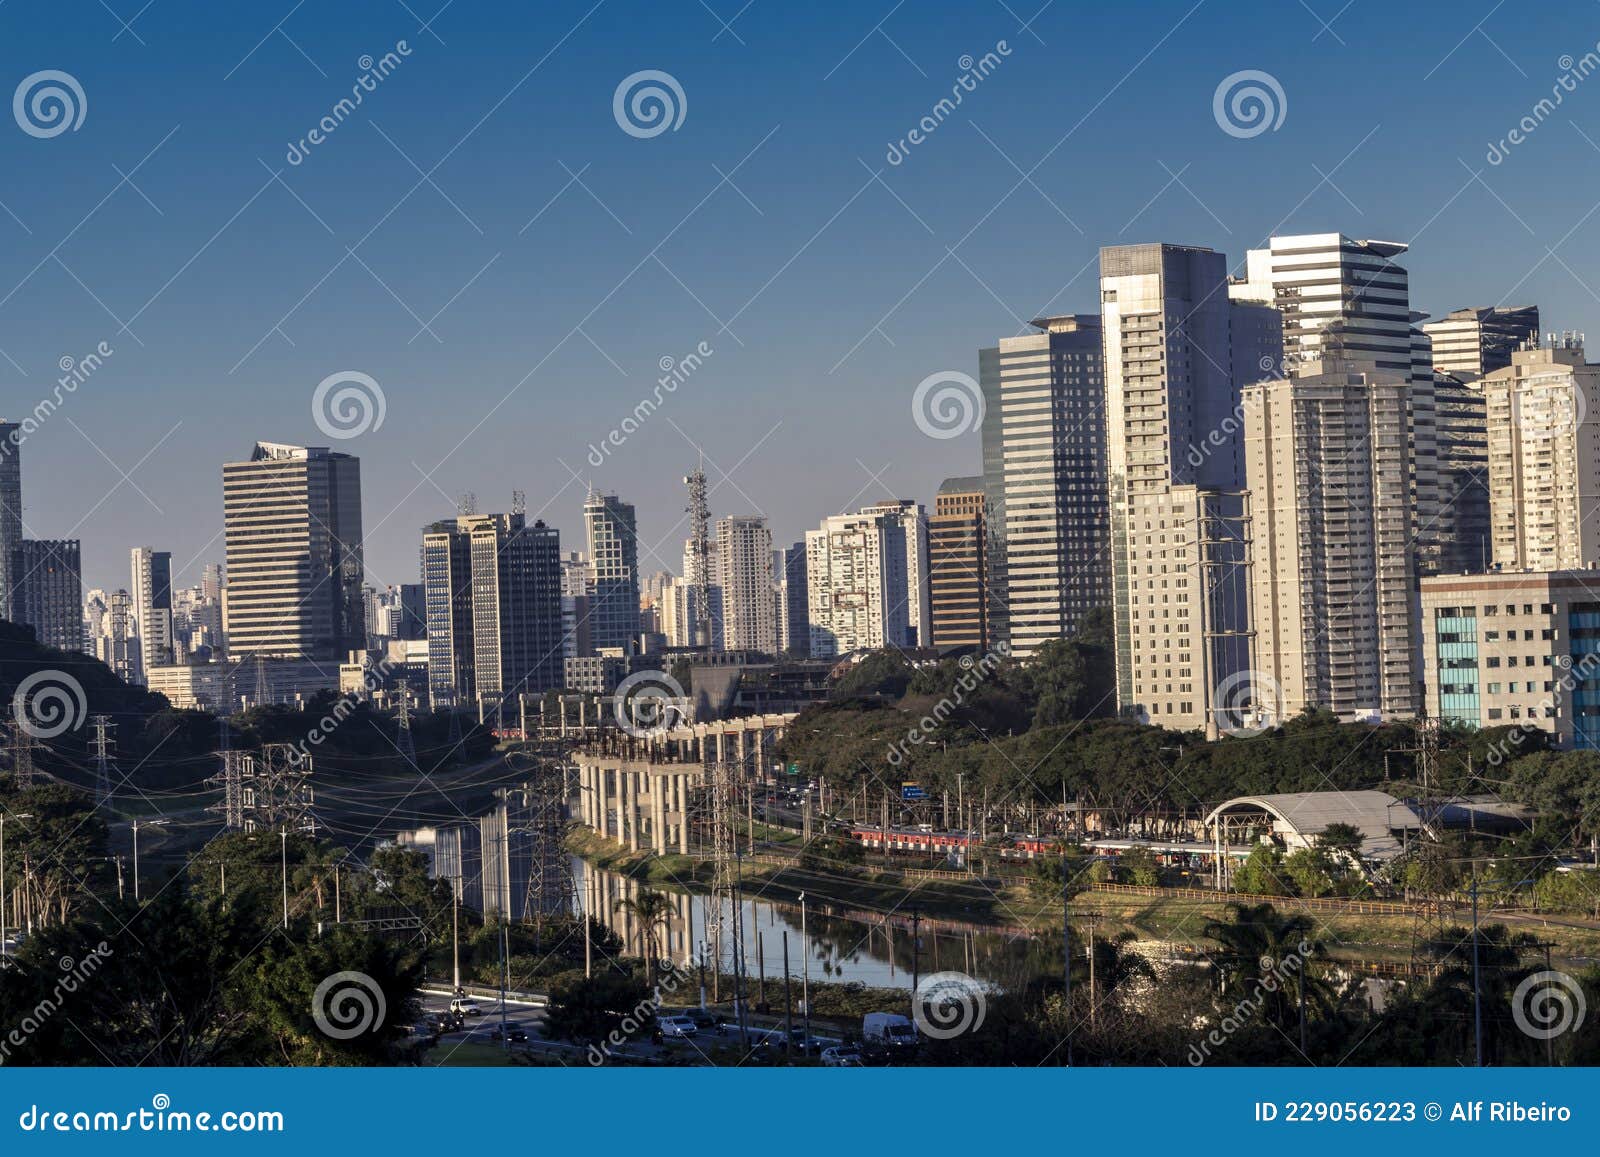 city skyline, with marginal avenue and pinheiros river